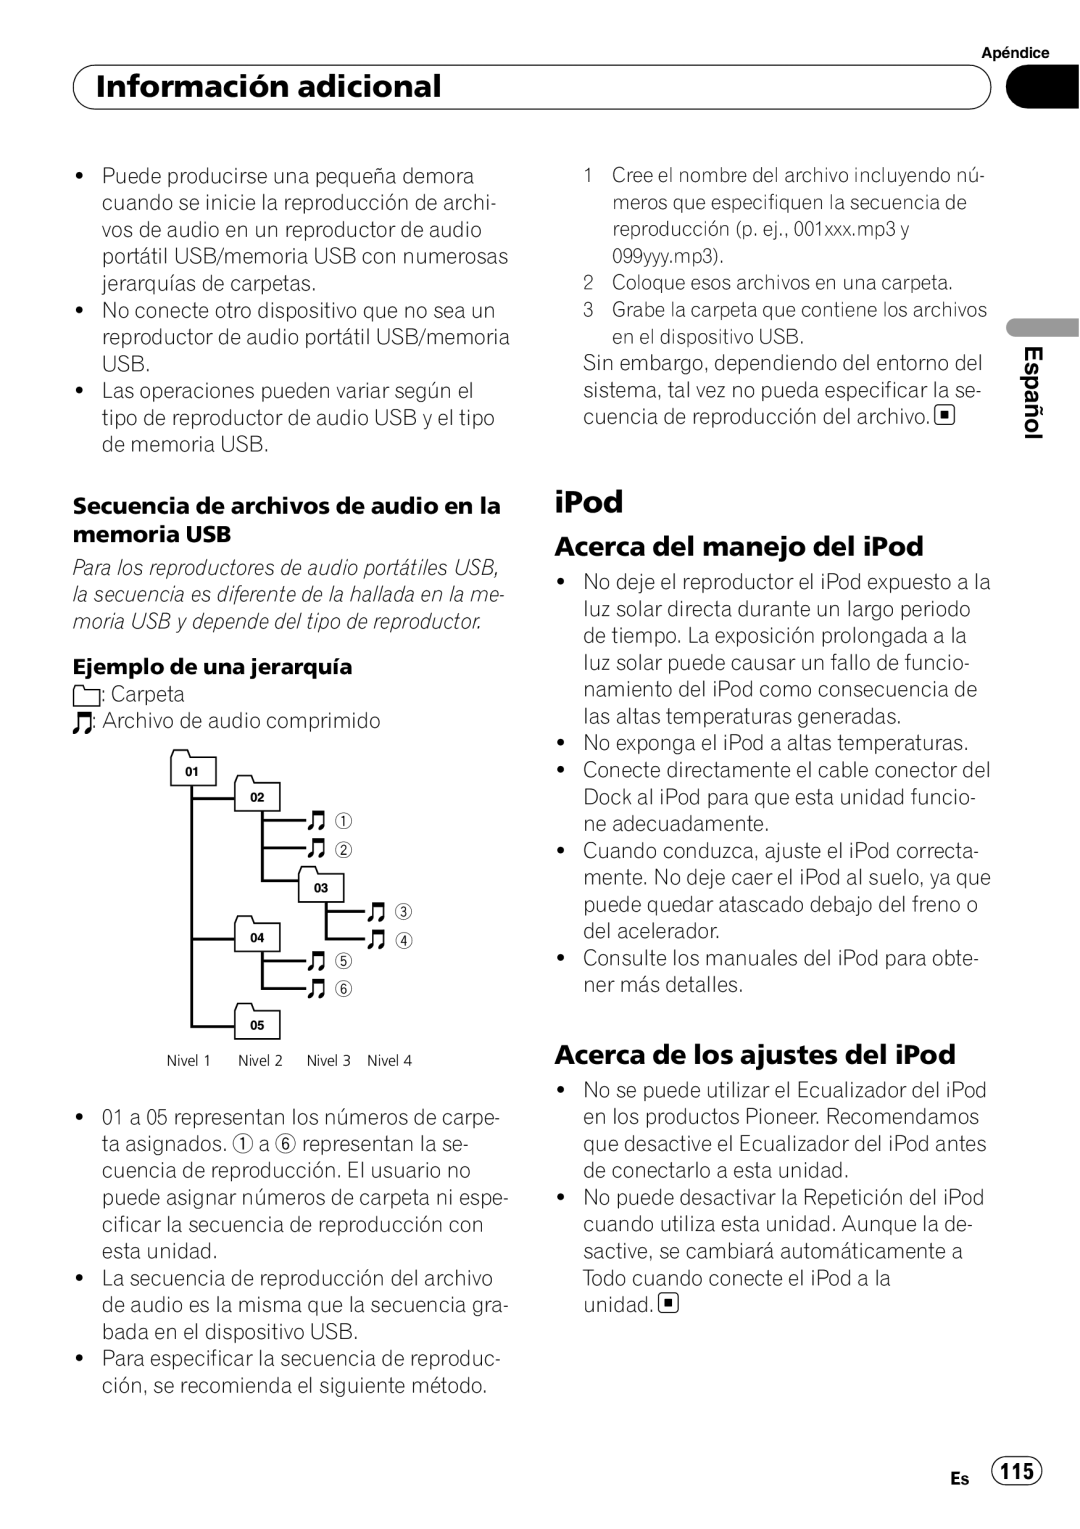 Pioneer DEH-P6000UB Acerca del manejo del iPod, Acerca de los ajustes del iPod, Información adicional, Español 